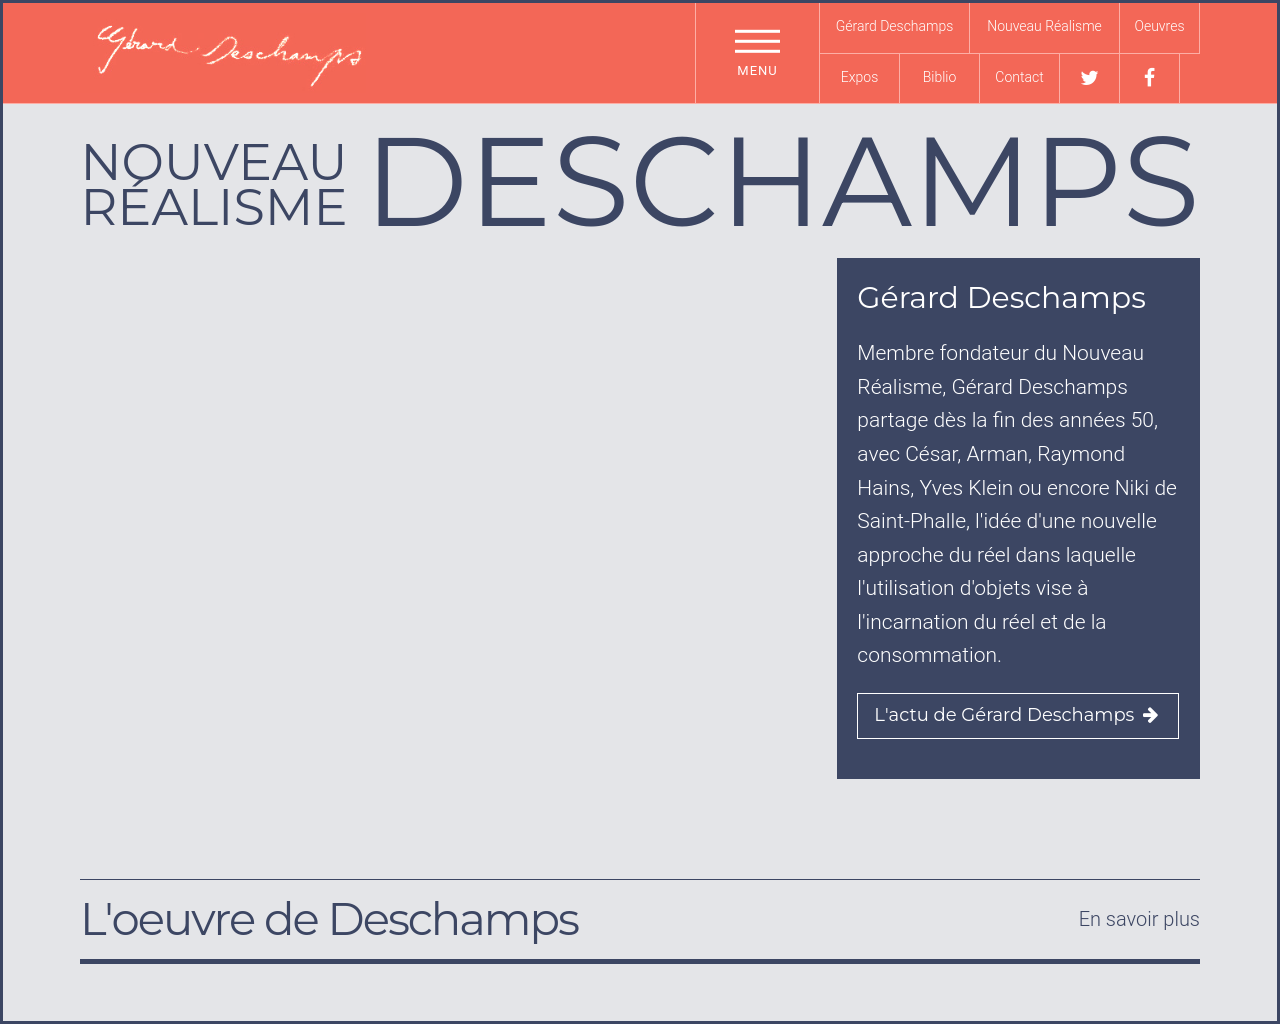 gerard-deschamps.fr